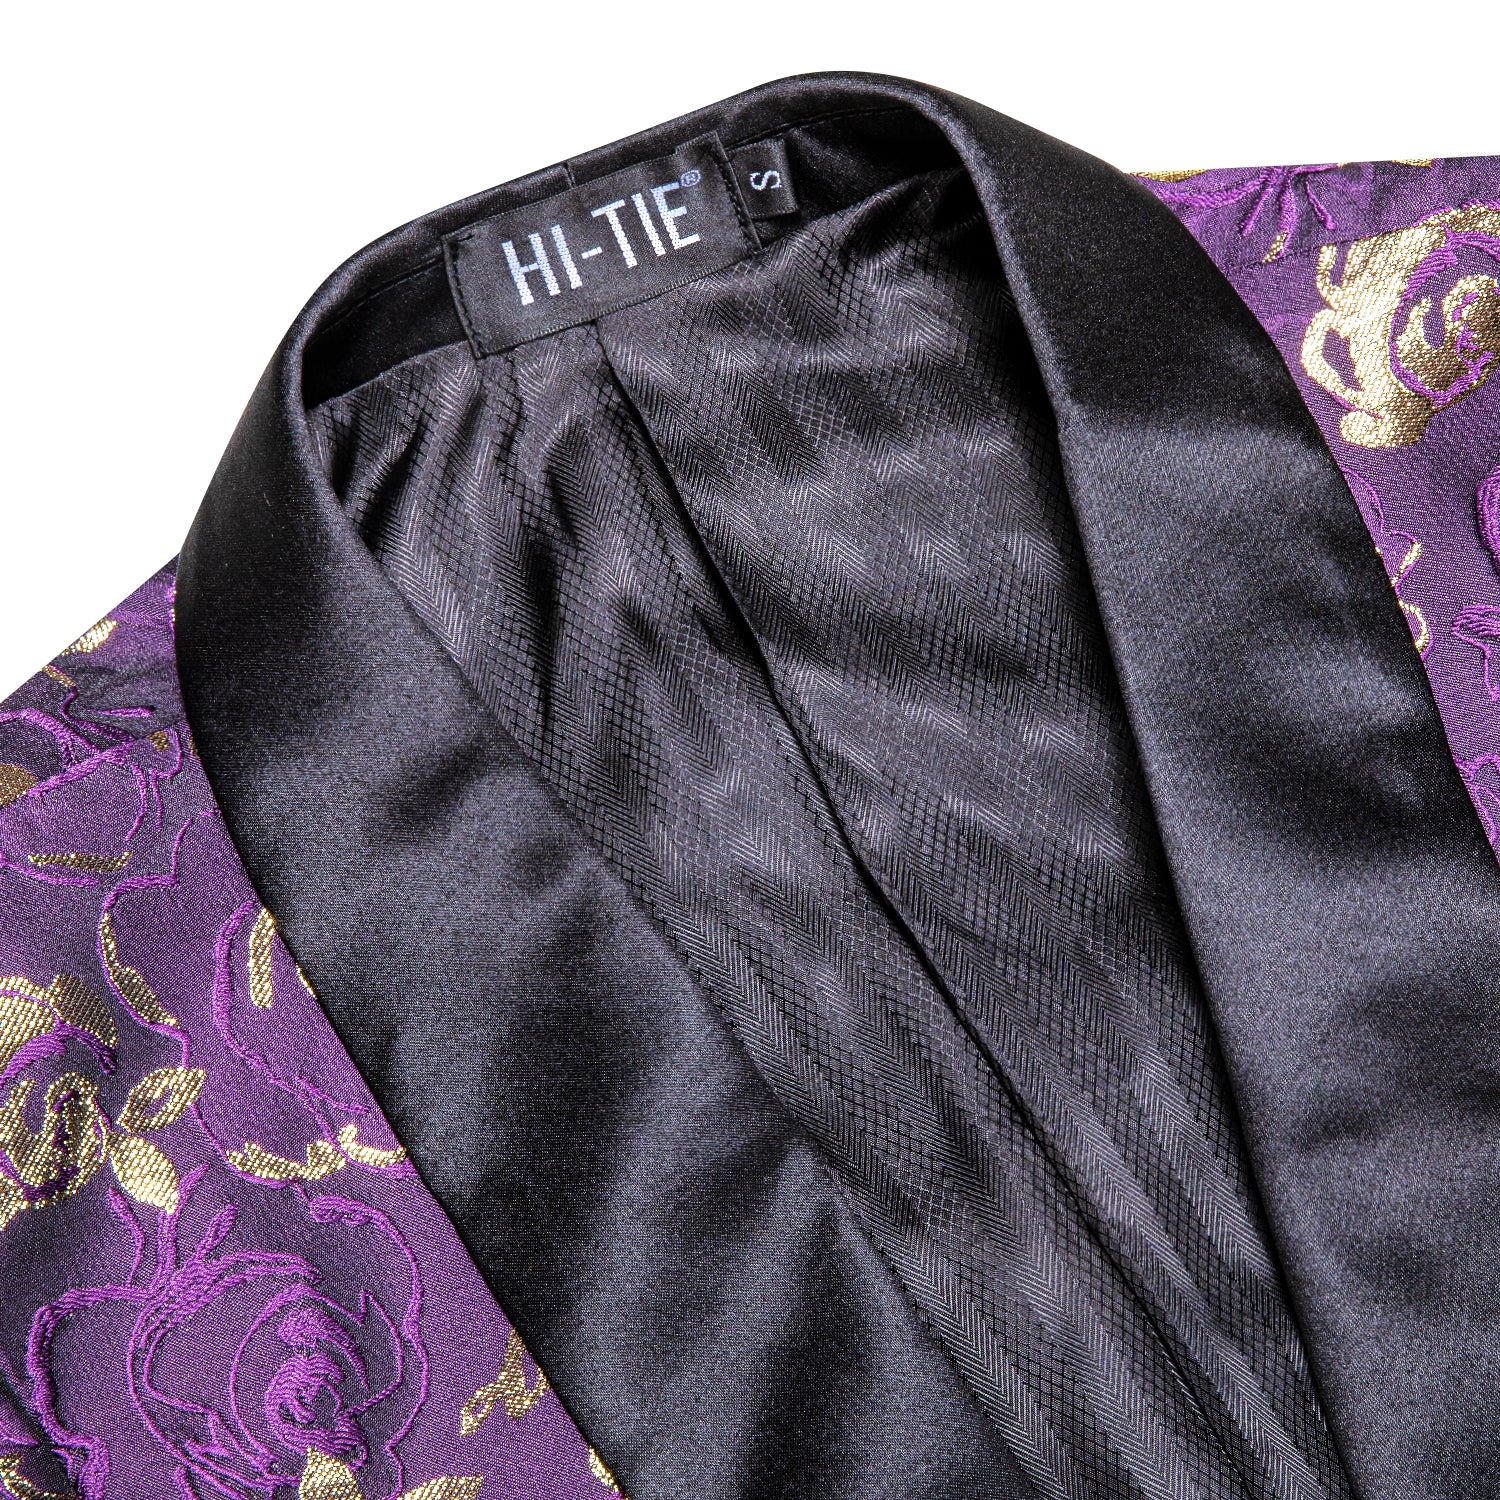 New Luxury Purple Champagne Floral Men's Suit Set